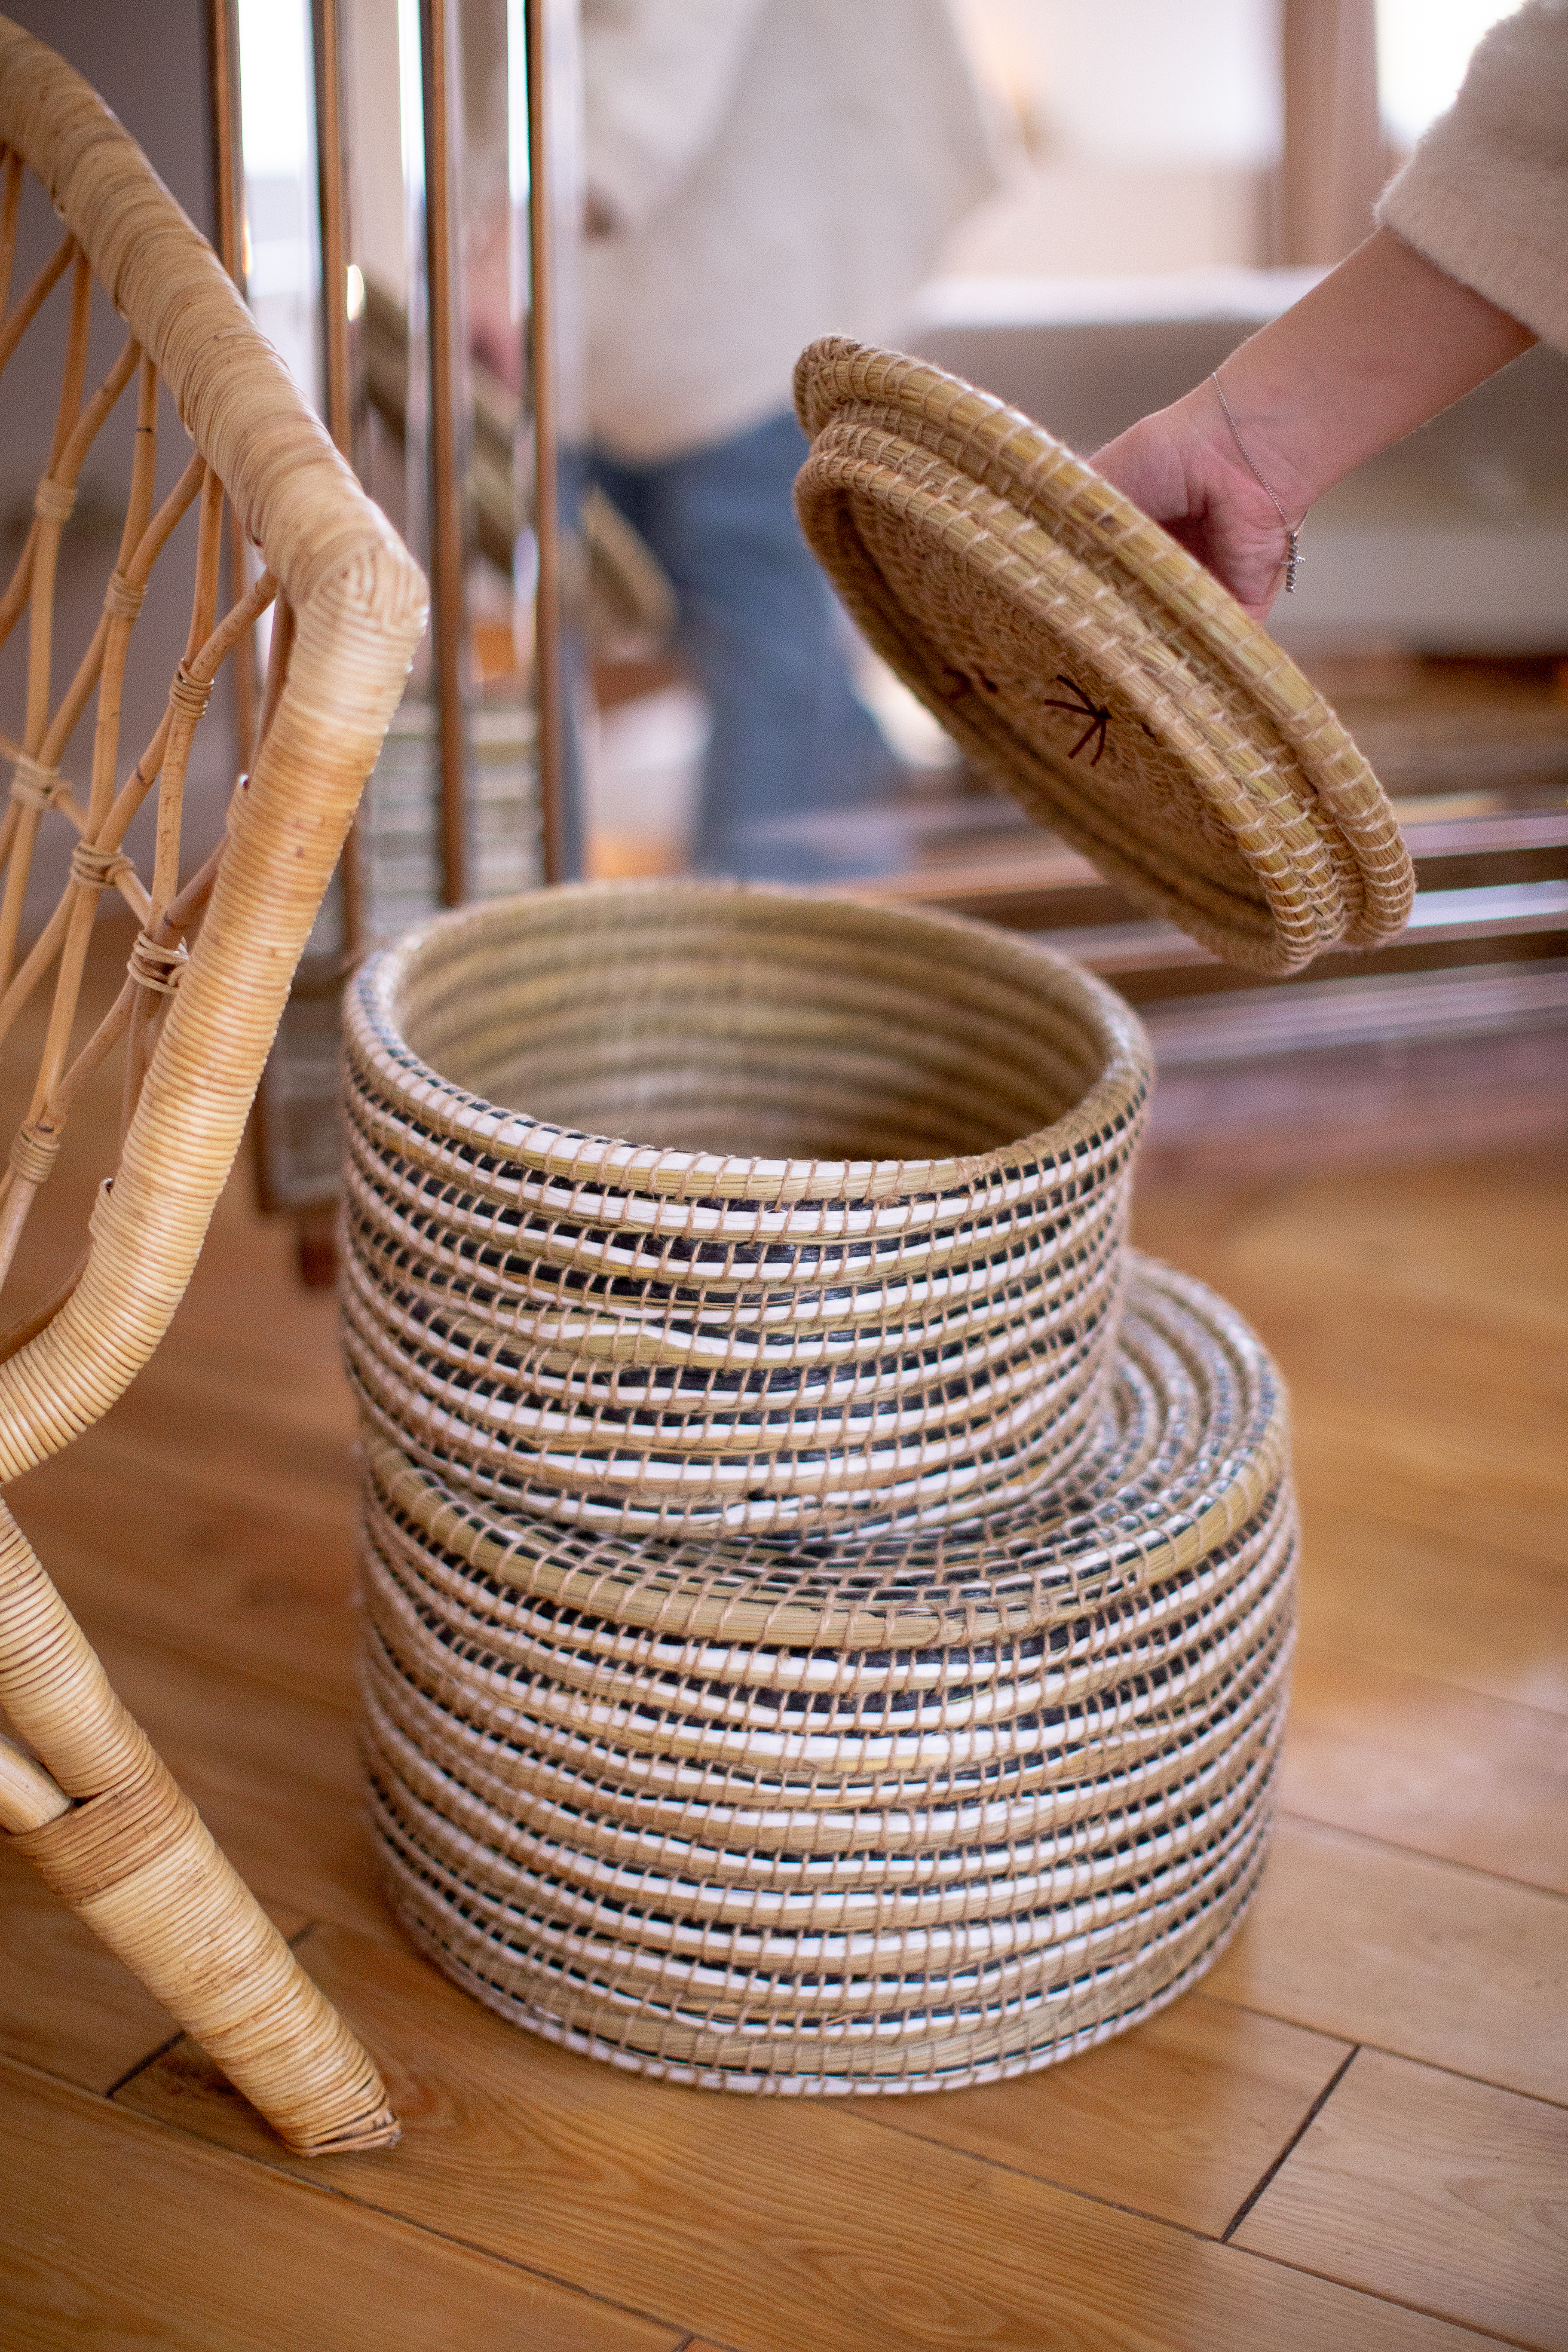 Пошаговое плетение корзин из ивы для начинающих